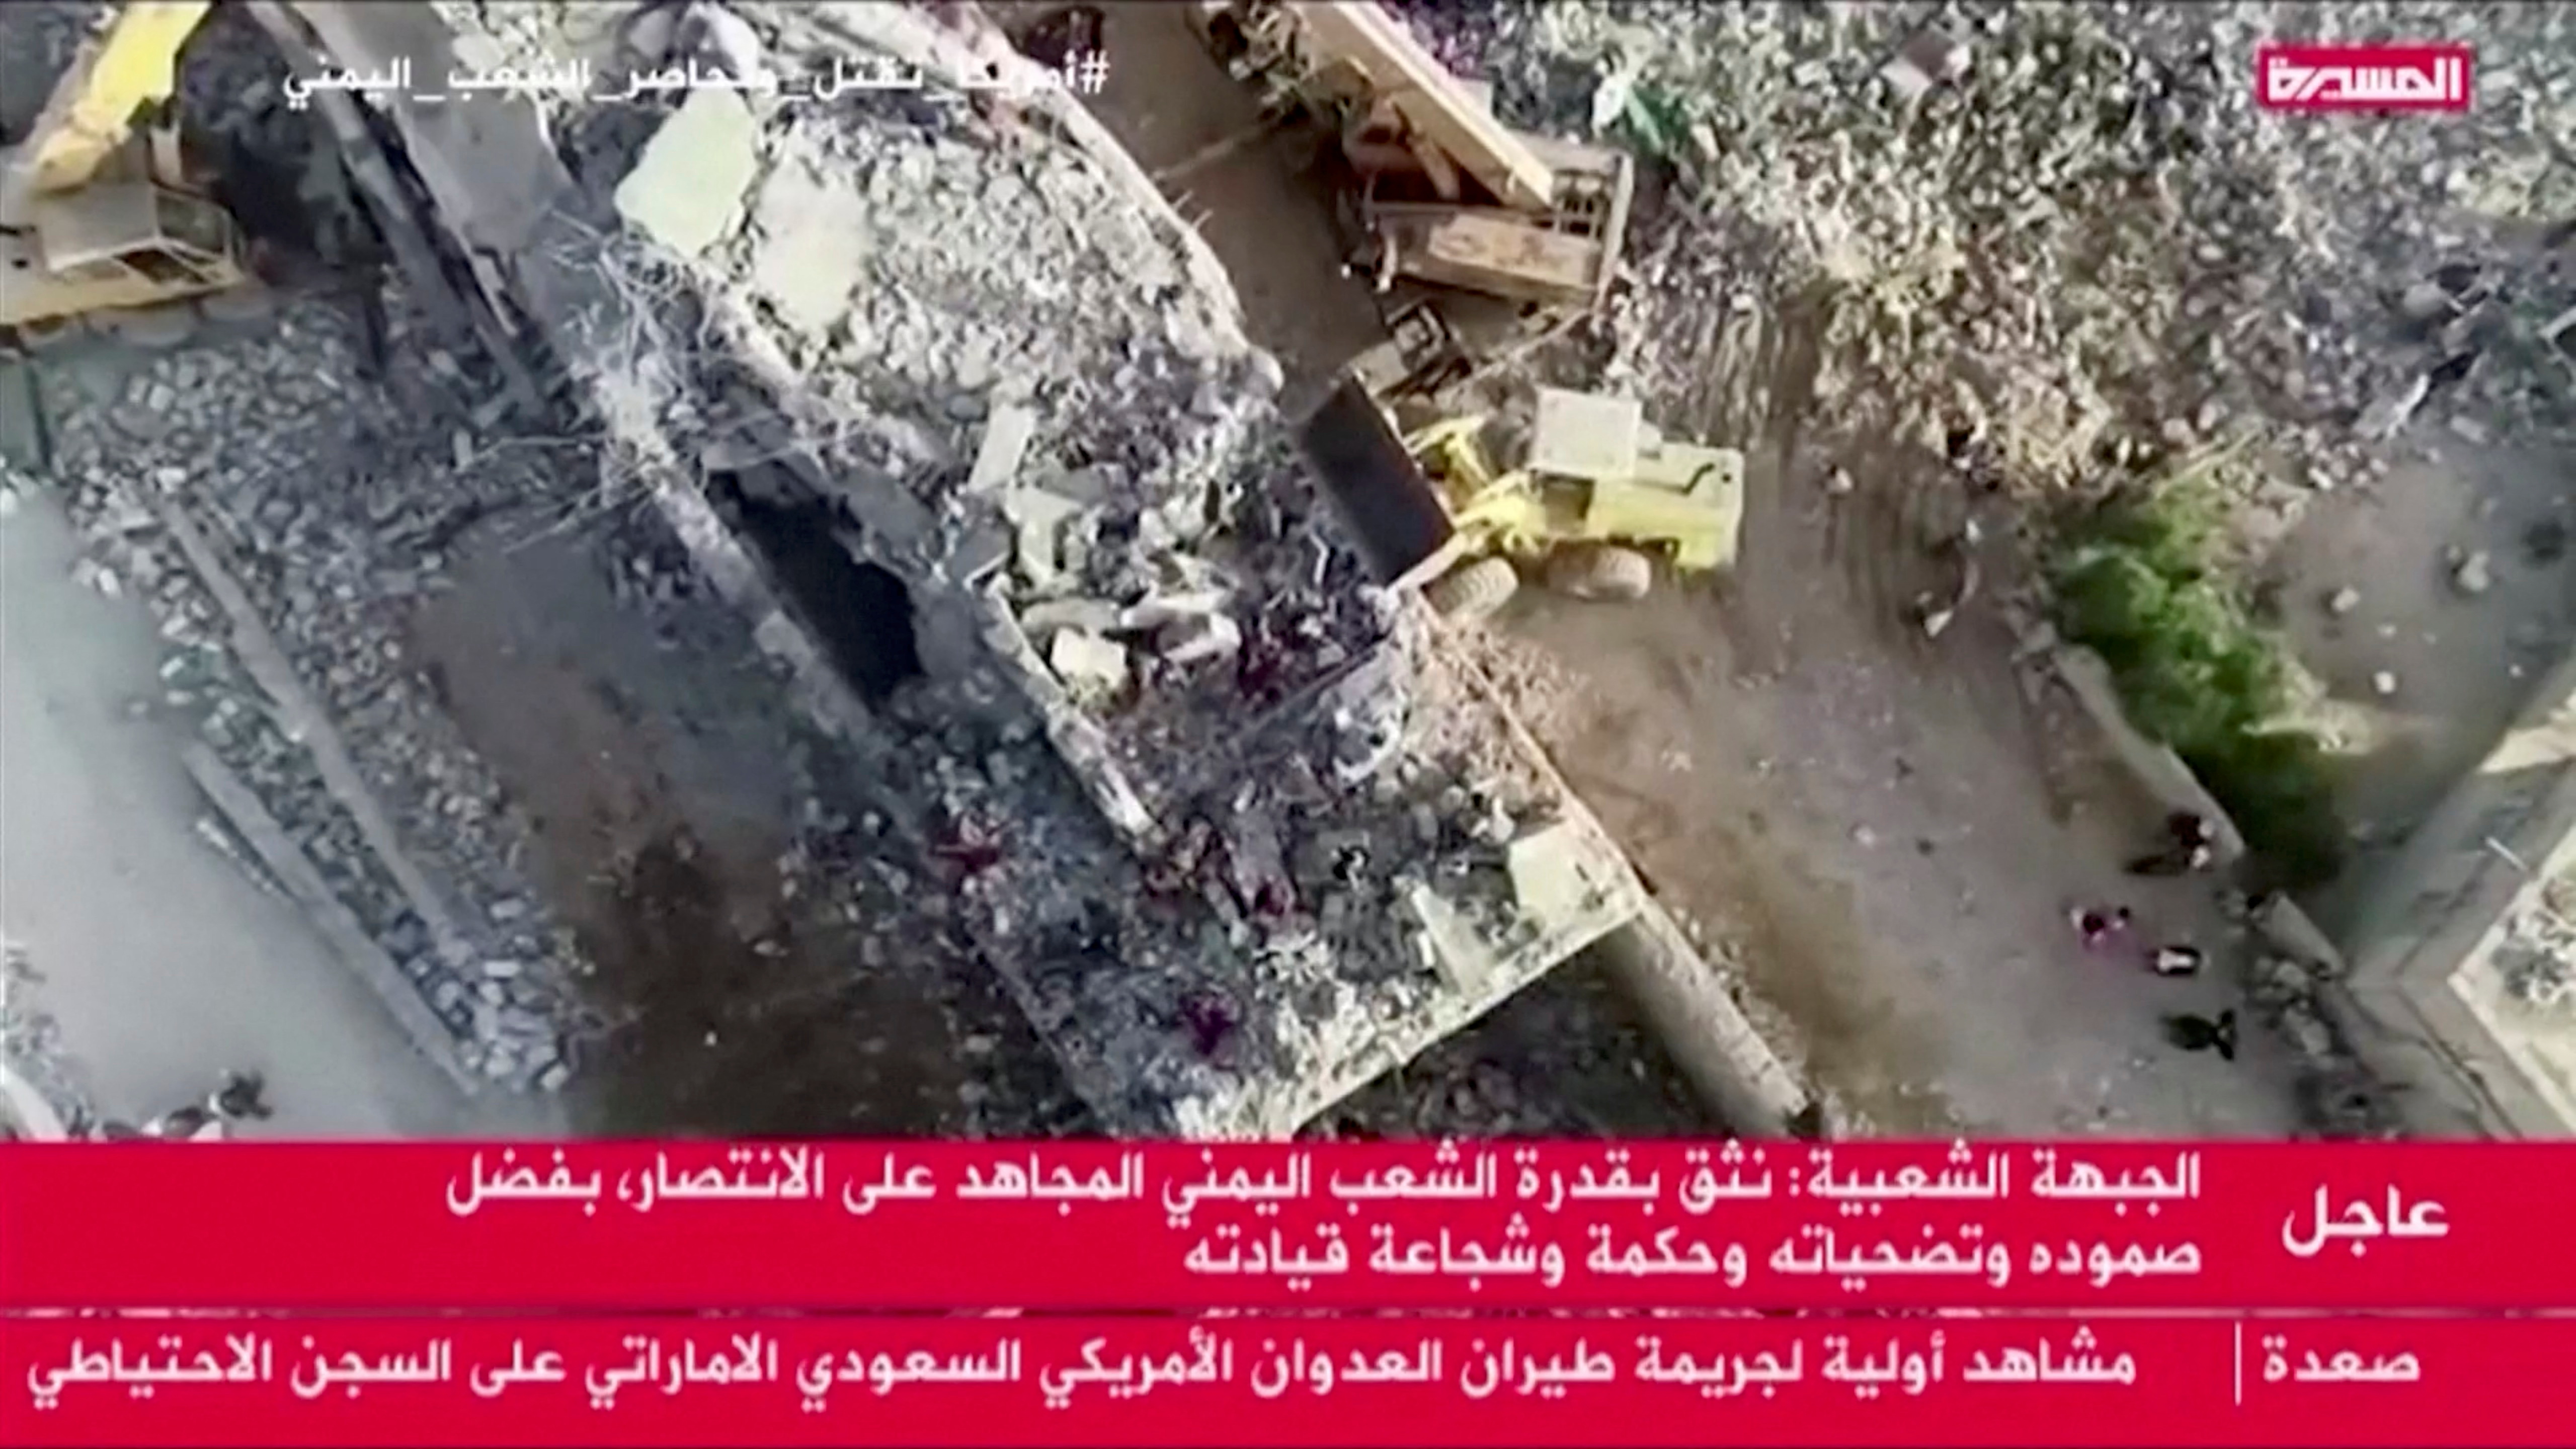 Los escombros después de que un ataque aéreo golpeara un centro de detención temporal se ven en Saada, Yemen, el 21 de enero de 2022 en esta imagen fija obtenida de un vídeo. Vídeo grabado con un dron. Al Masirah TV/REUTERS TV vía REUTERS